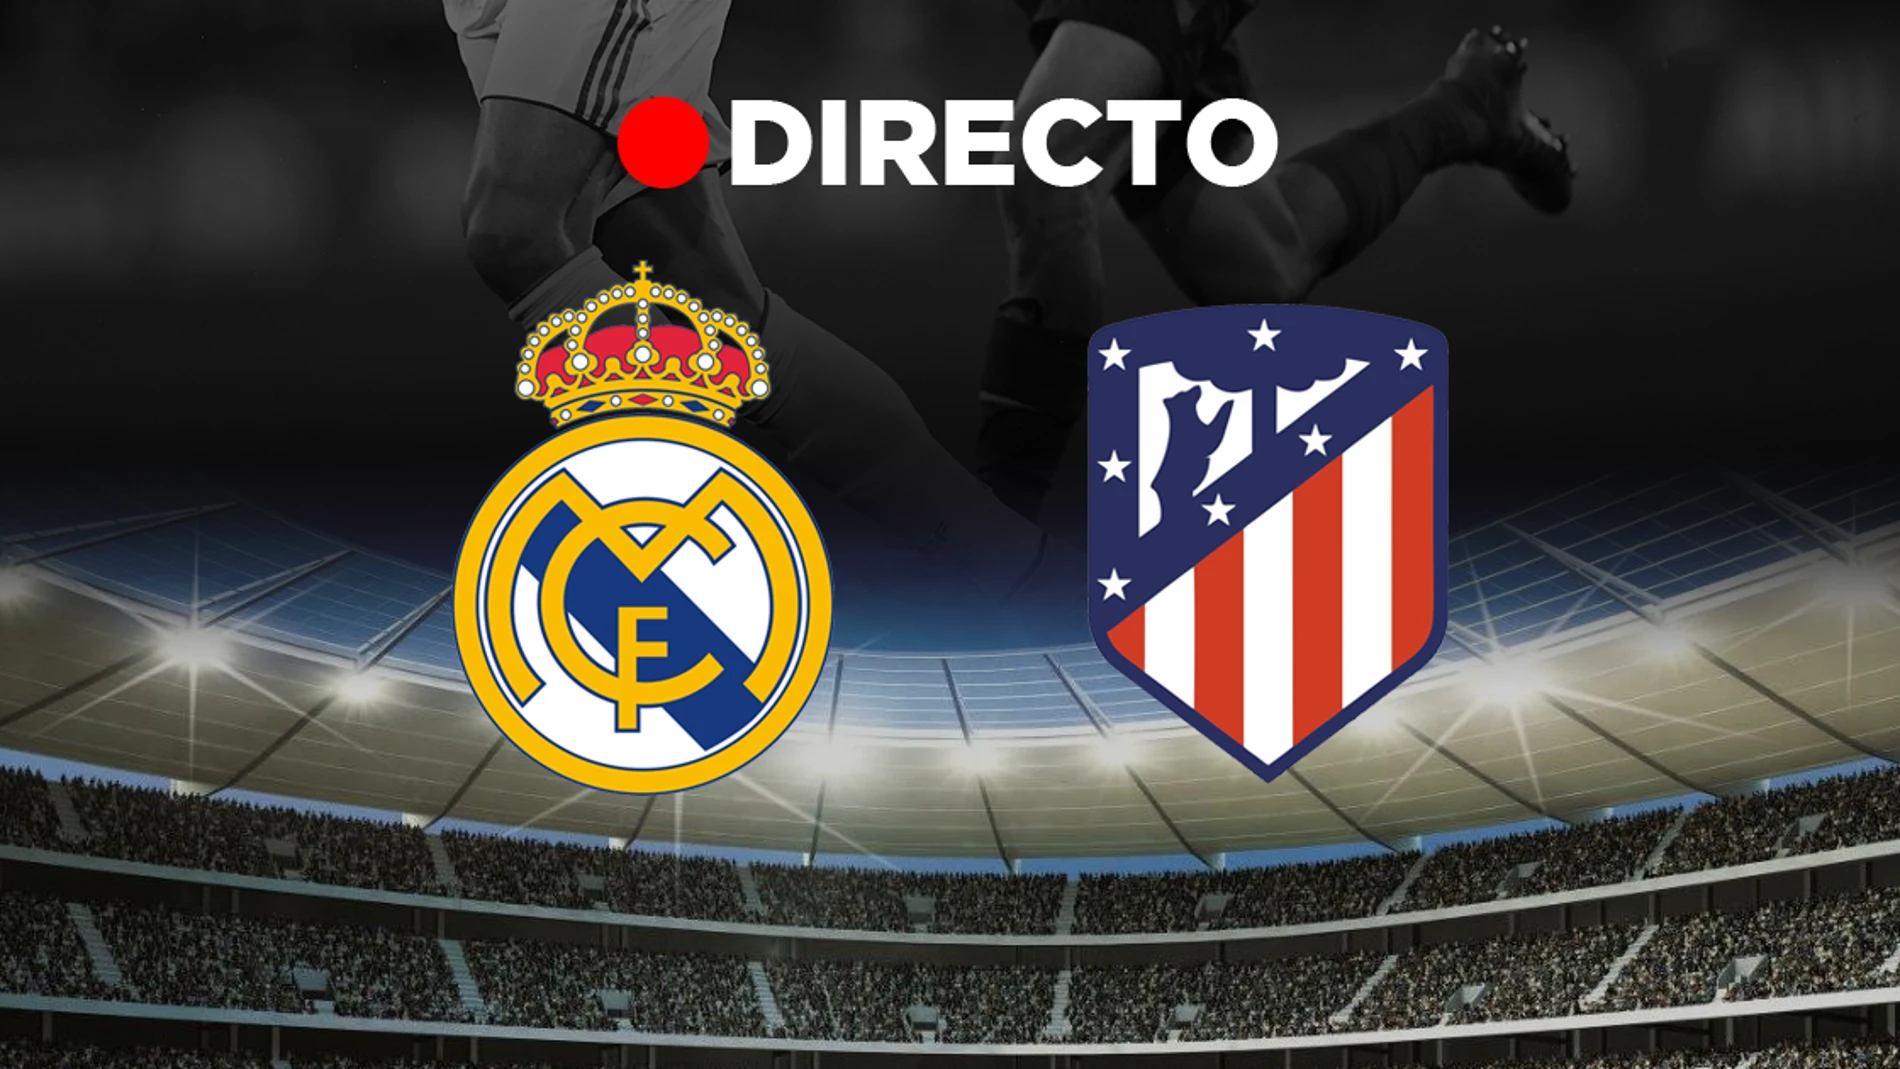 Diverso Lo dudo arco Real Madrid - Atlético | Resultado y goles | Partido de fútbol, hoy en  directo